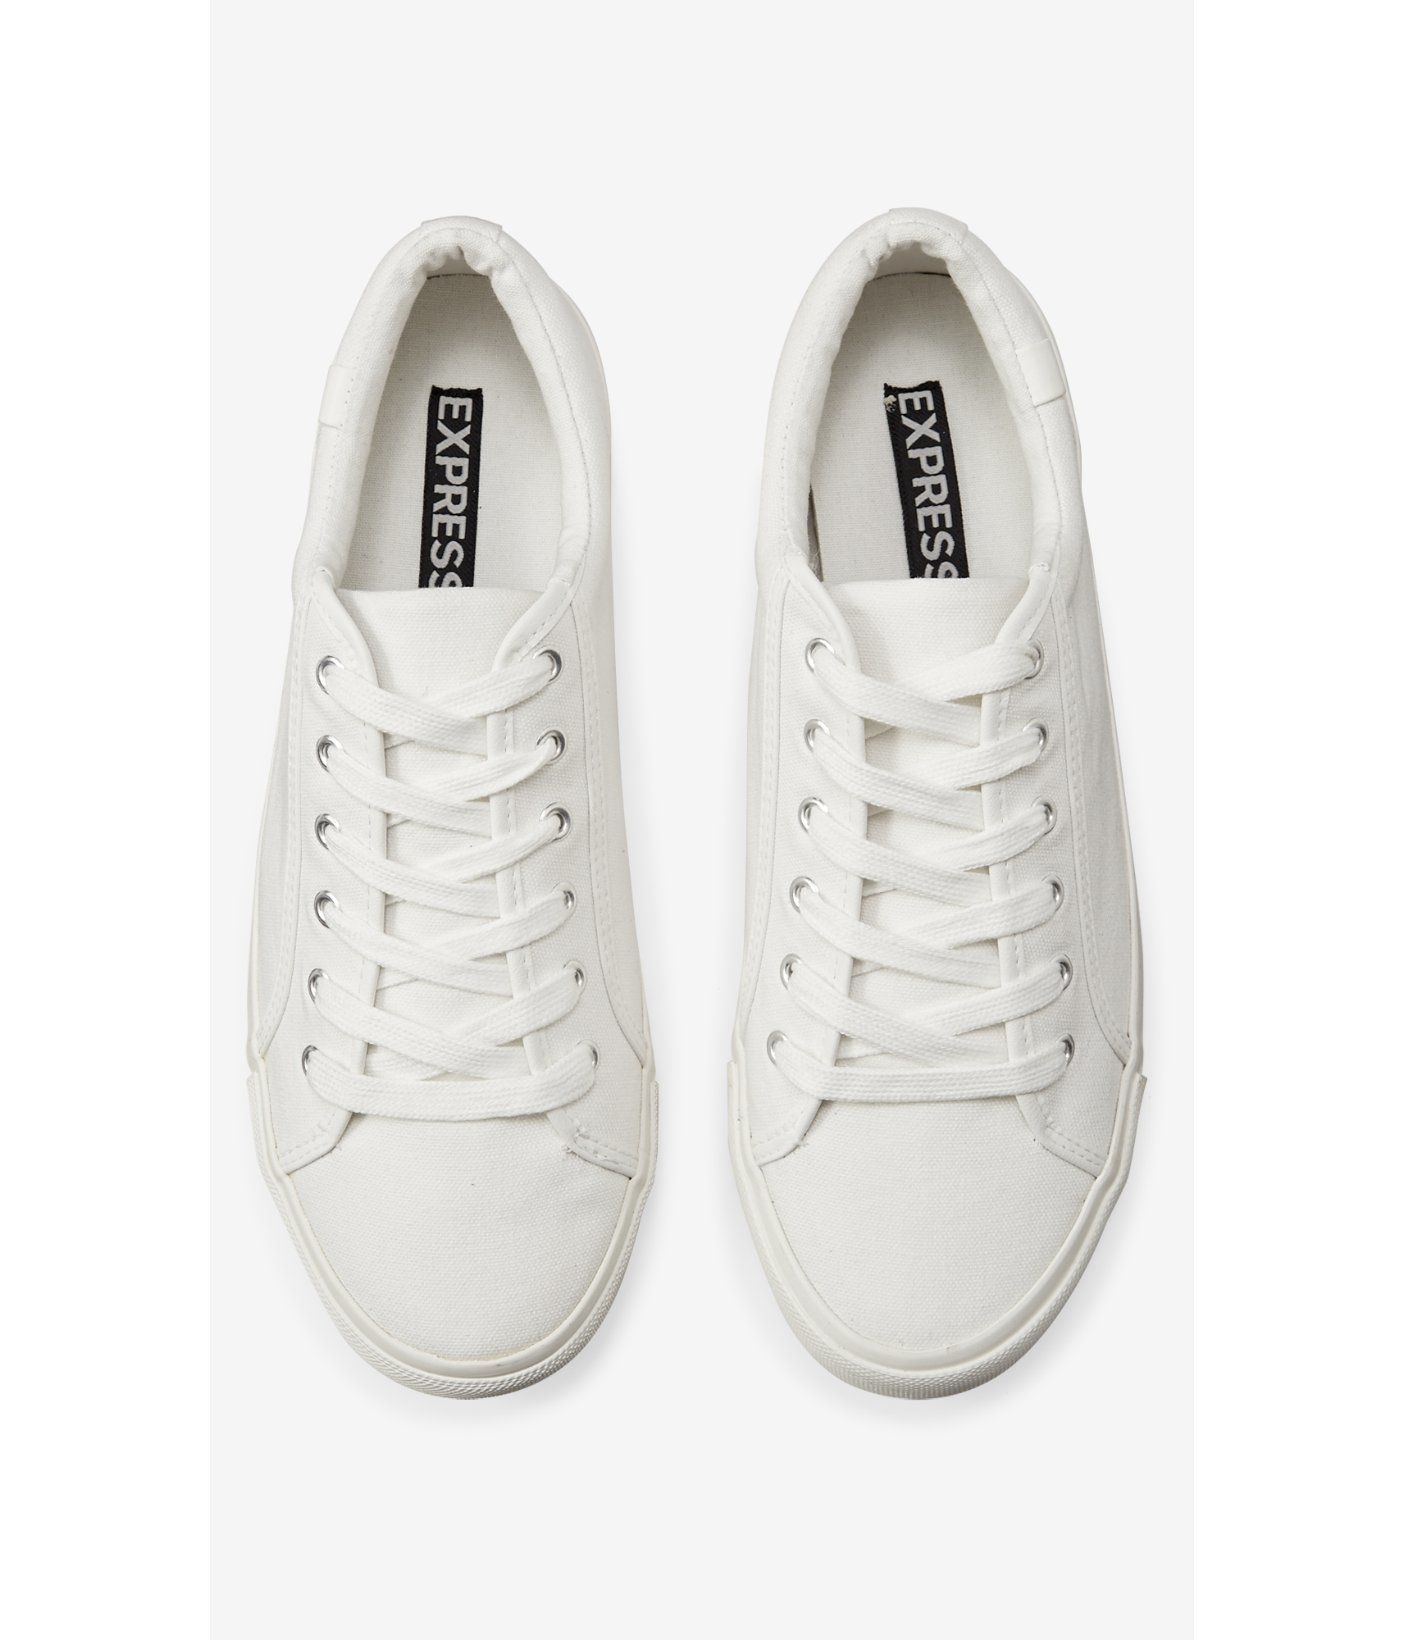 Lyst - Express White Cap Toe Sneaker in White for Men